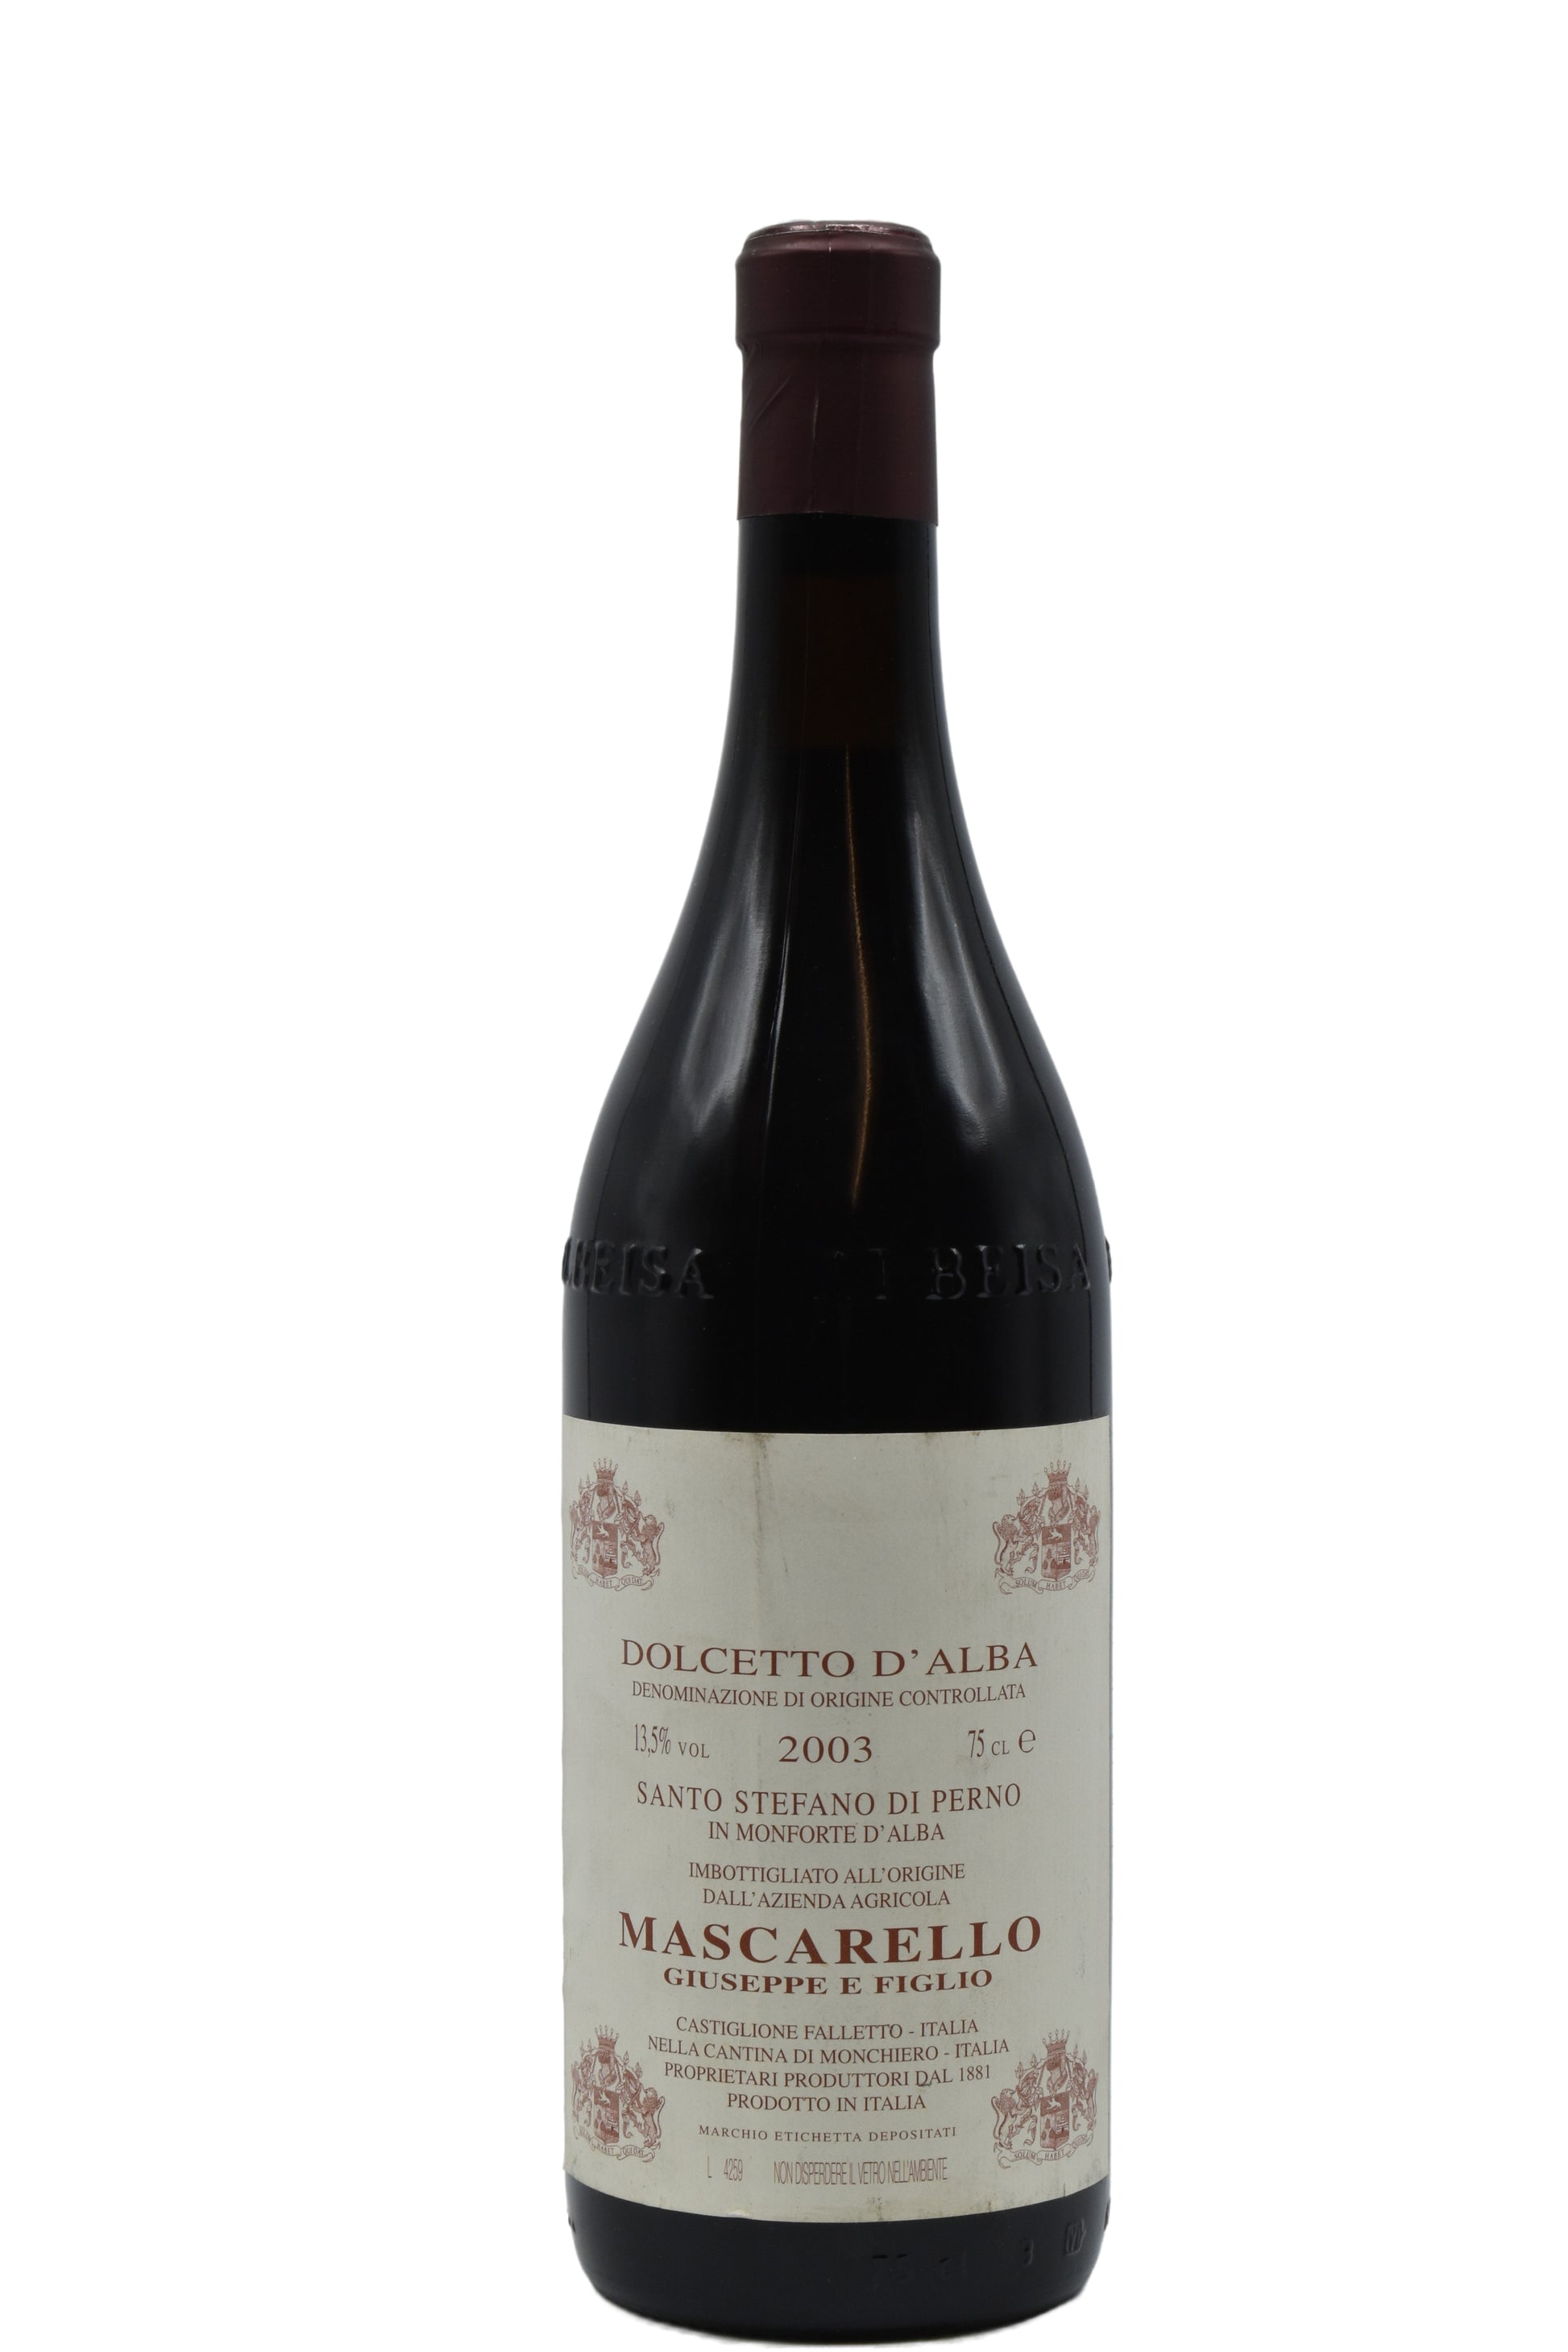 2003 Mascarello (Giuseppe), Dolcetto d'Alba, Santo Stefano di Perno 750ml - Walker Wine Co.